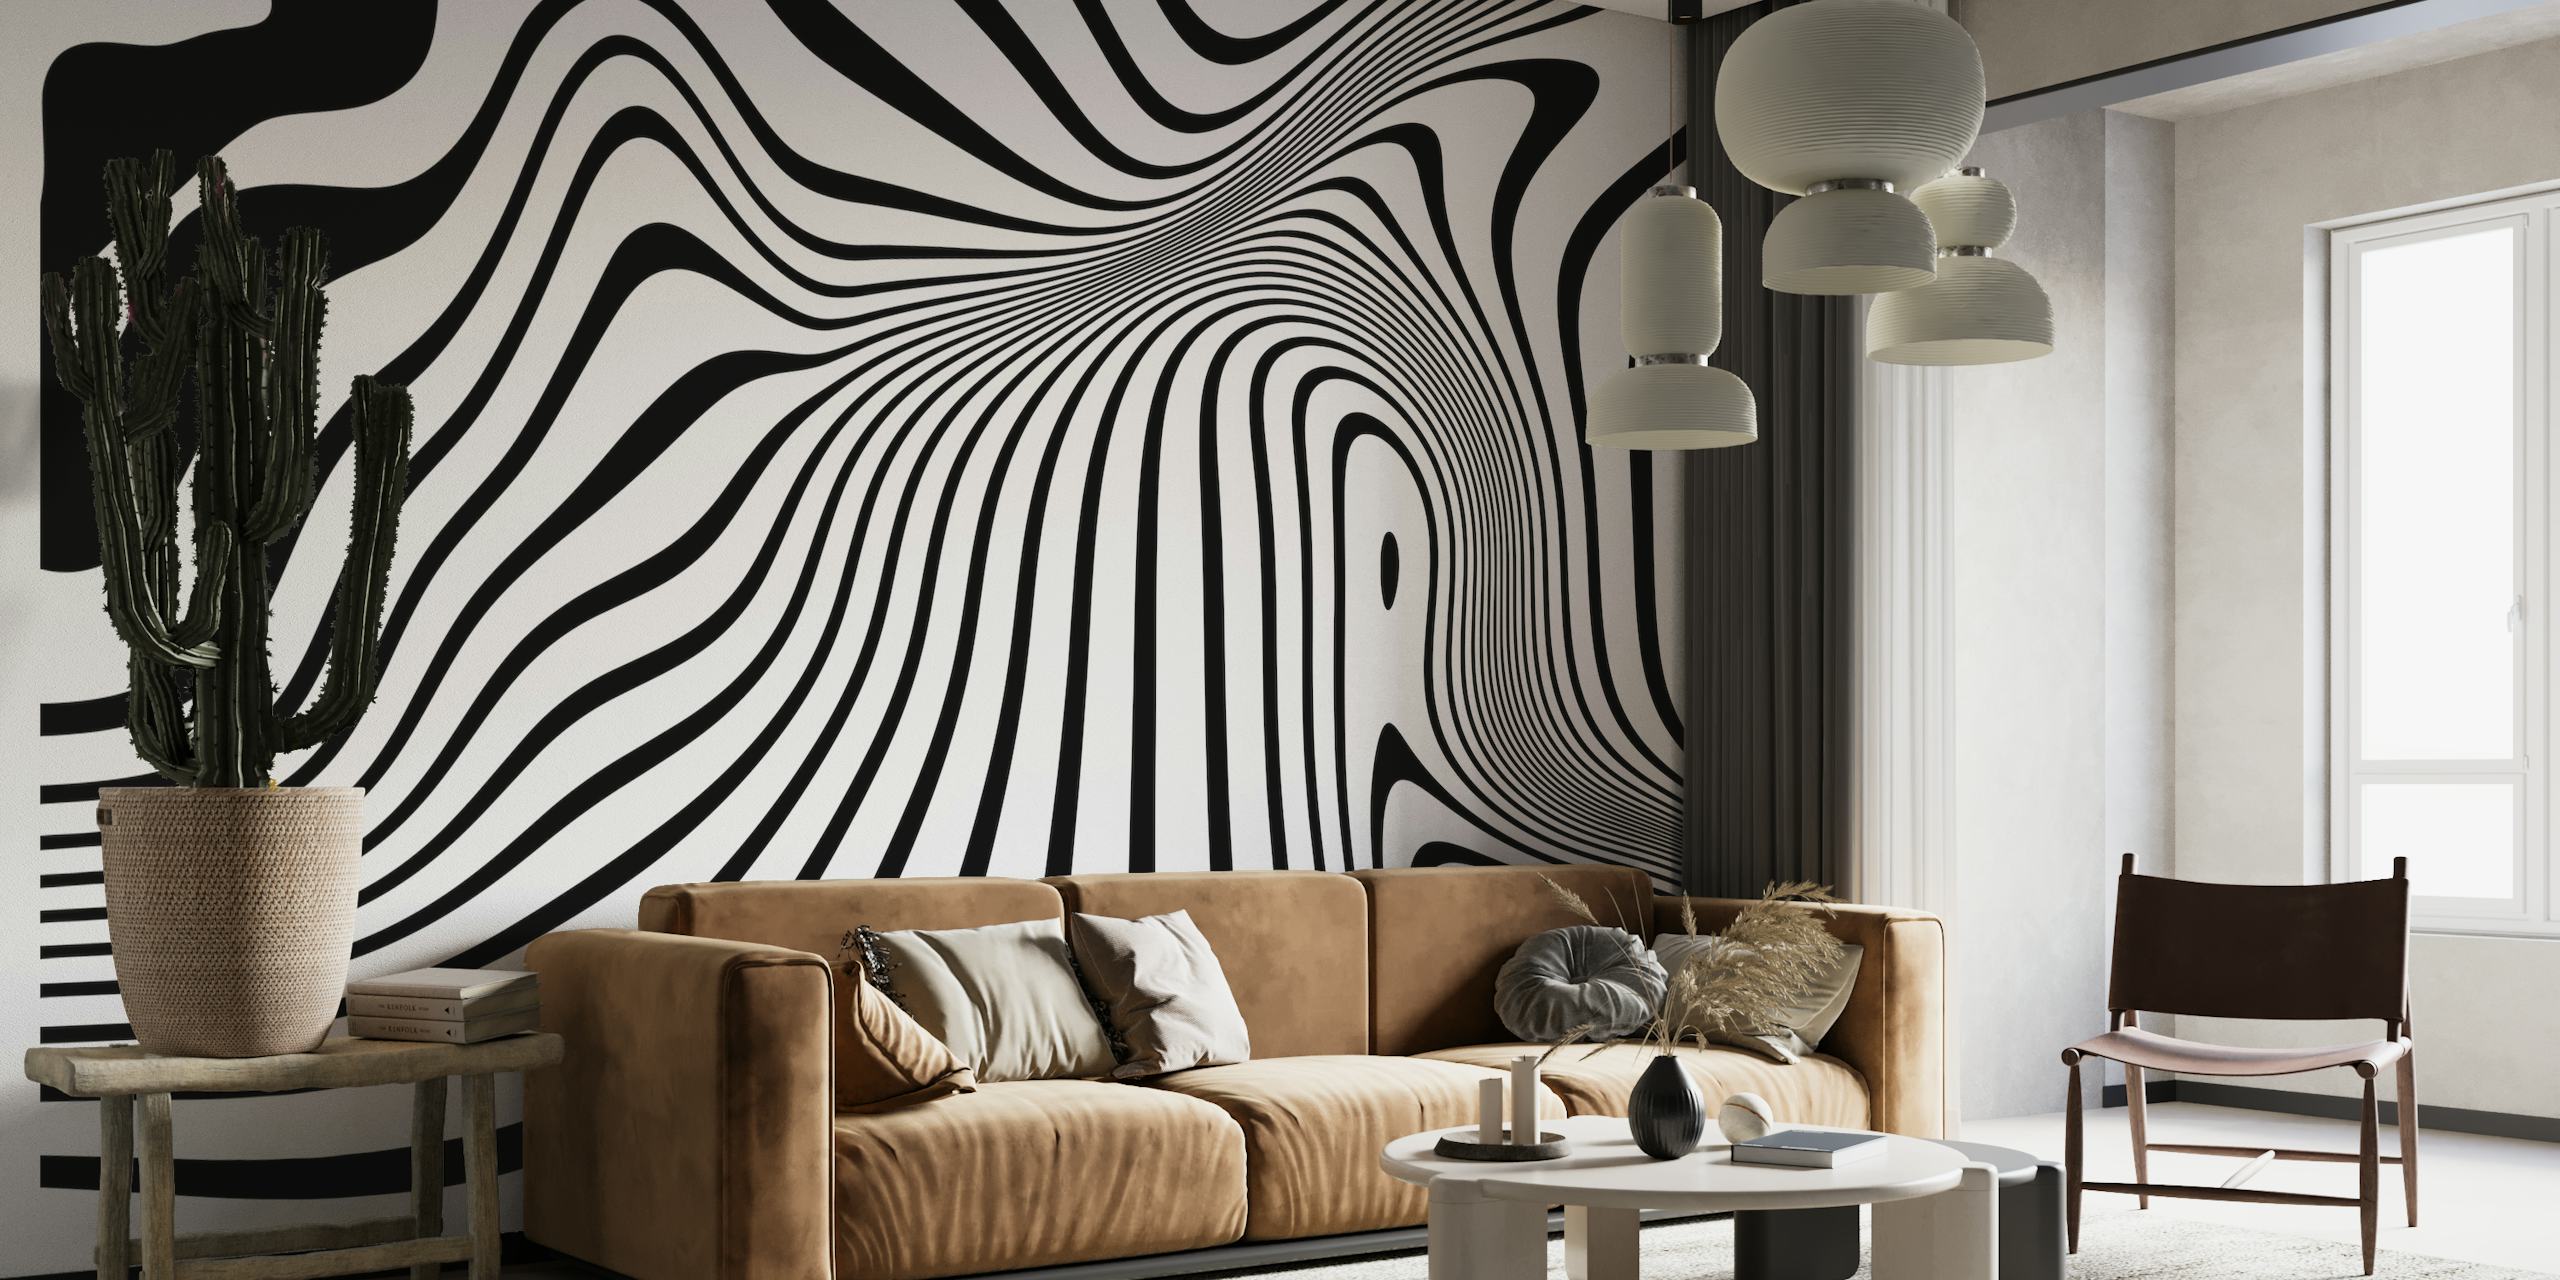 Zwart-wit fotobehang met abstracte lijntekeningen en vloeiende, organische vormen die een dynamische visuele textuur creëren